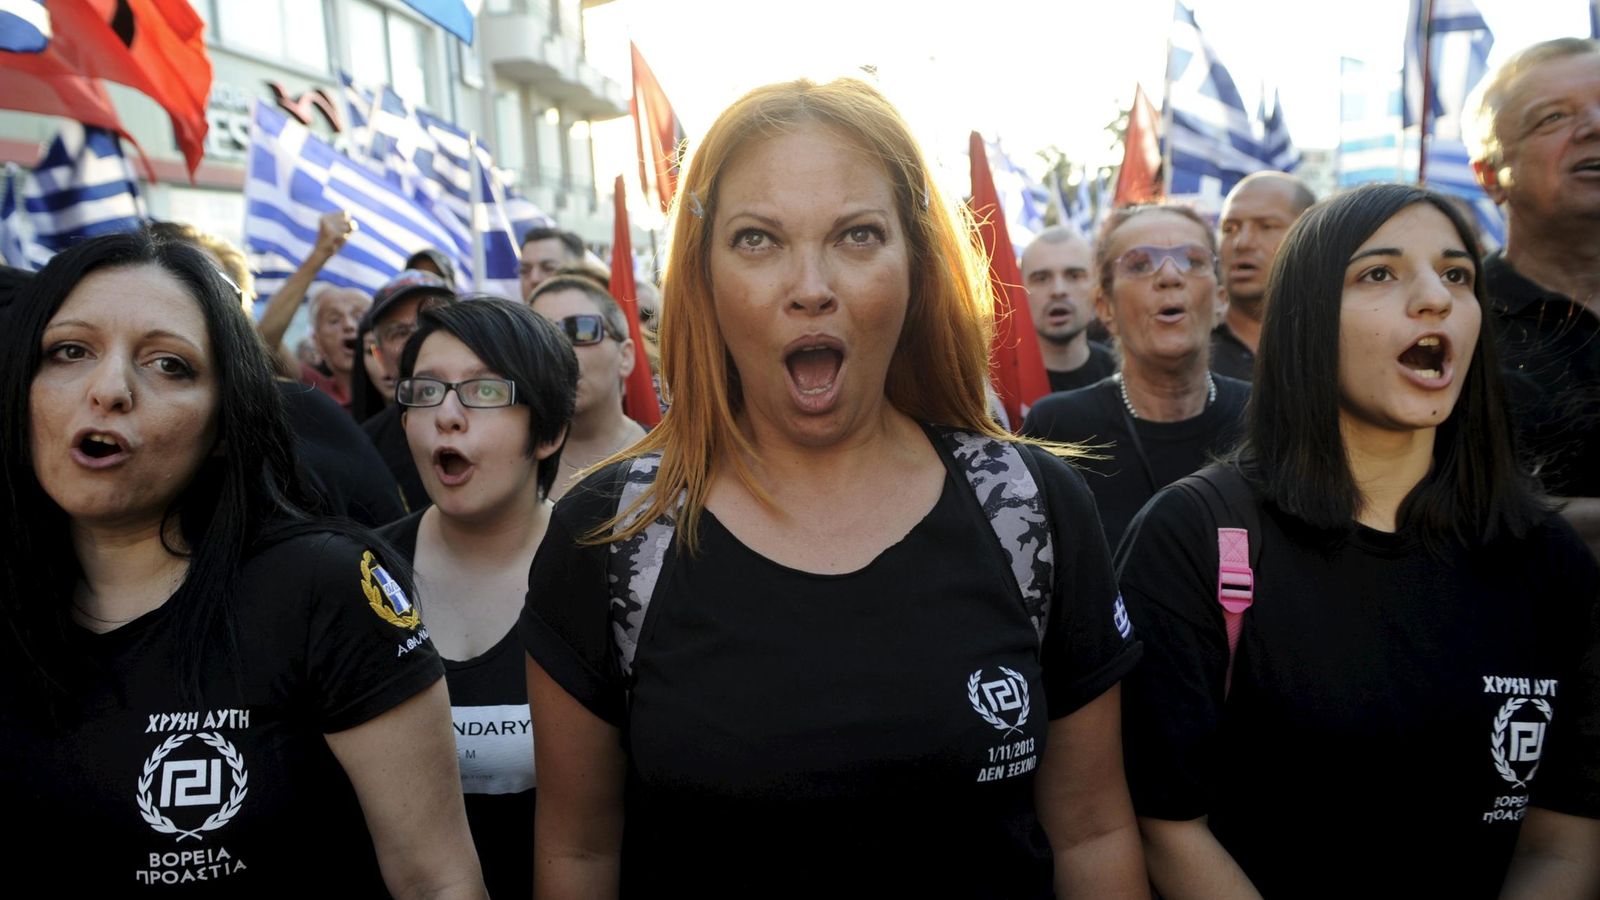 Foto: Seguidores de Amanecer Dorado durante un evento electoral en Atenas, el 16 de septiembre de 2015 (Reuters). 